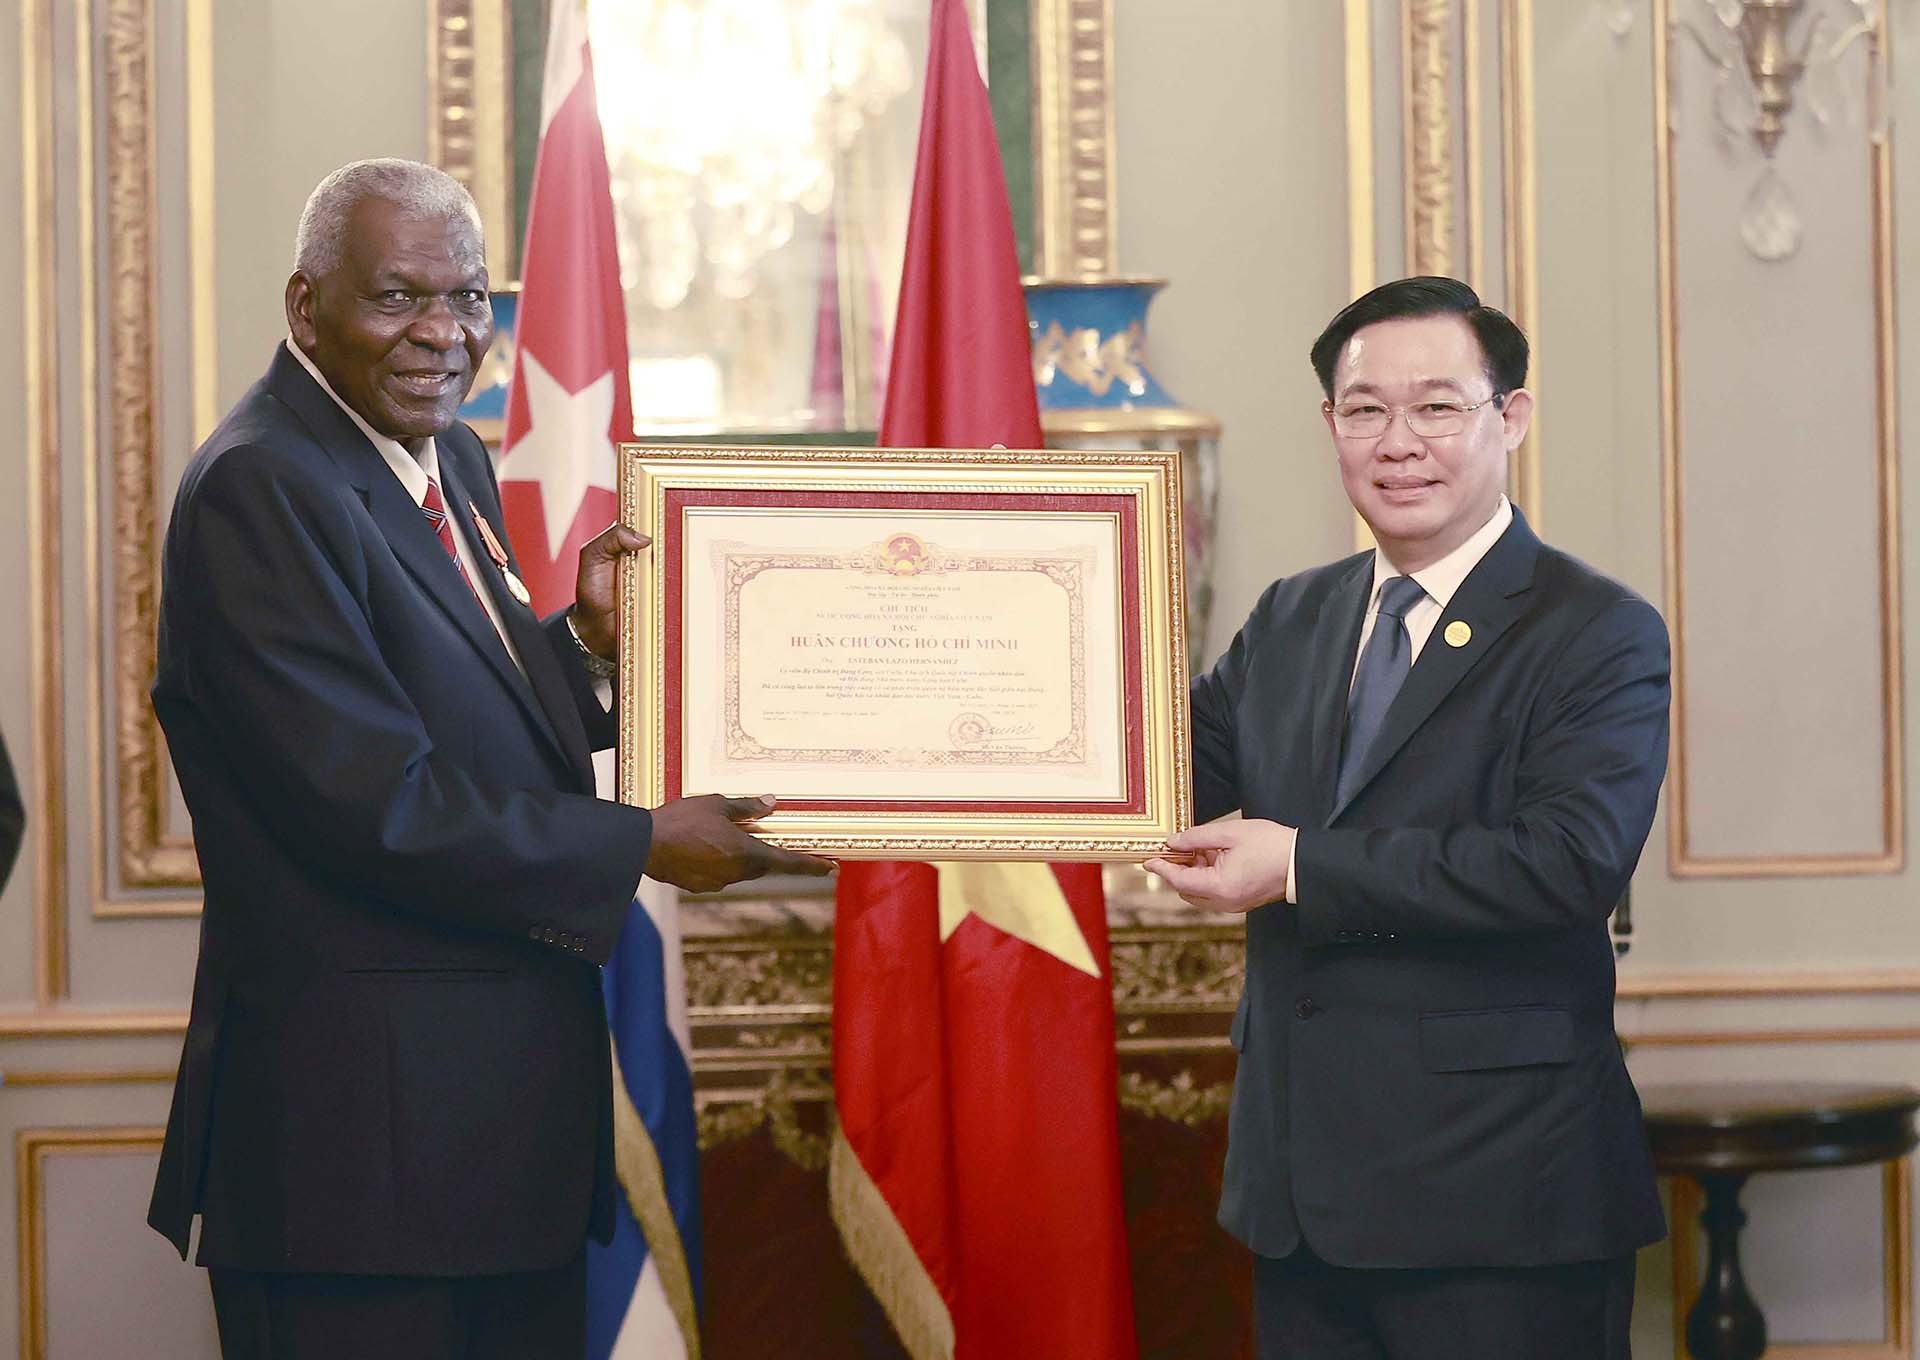 Chủ tịch Quốc hội Vương Đình Huệ trao Huân chương Hồ Chí Minh tặng Chủ tịch Quốc hội Cuba Esteban Lazo Hernandez. (Nguồn: TTXVN)